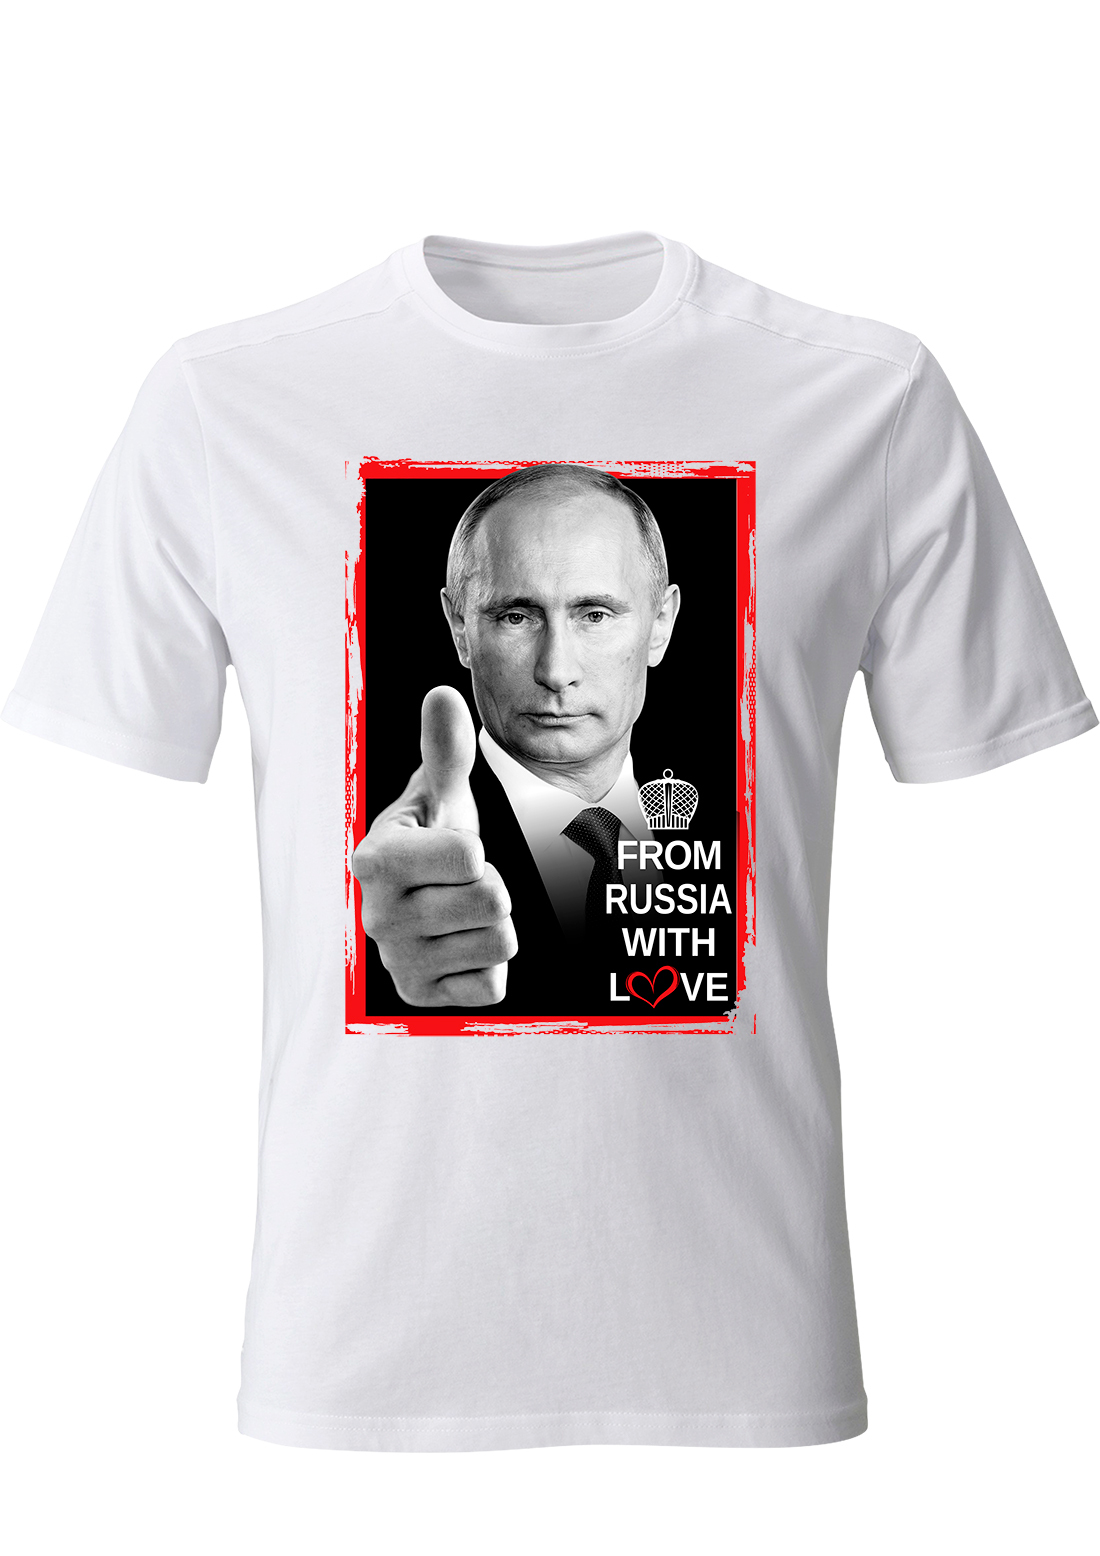 Рамка для футболки. Футболка с портретом Путина. Футболка в рамке. Патриотические футболки с Путиным.